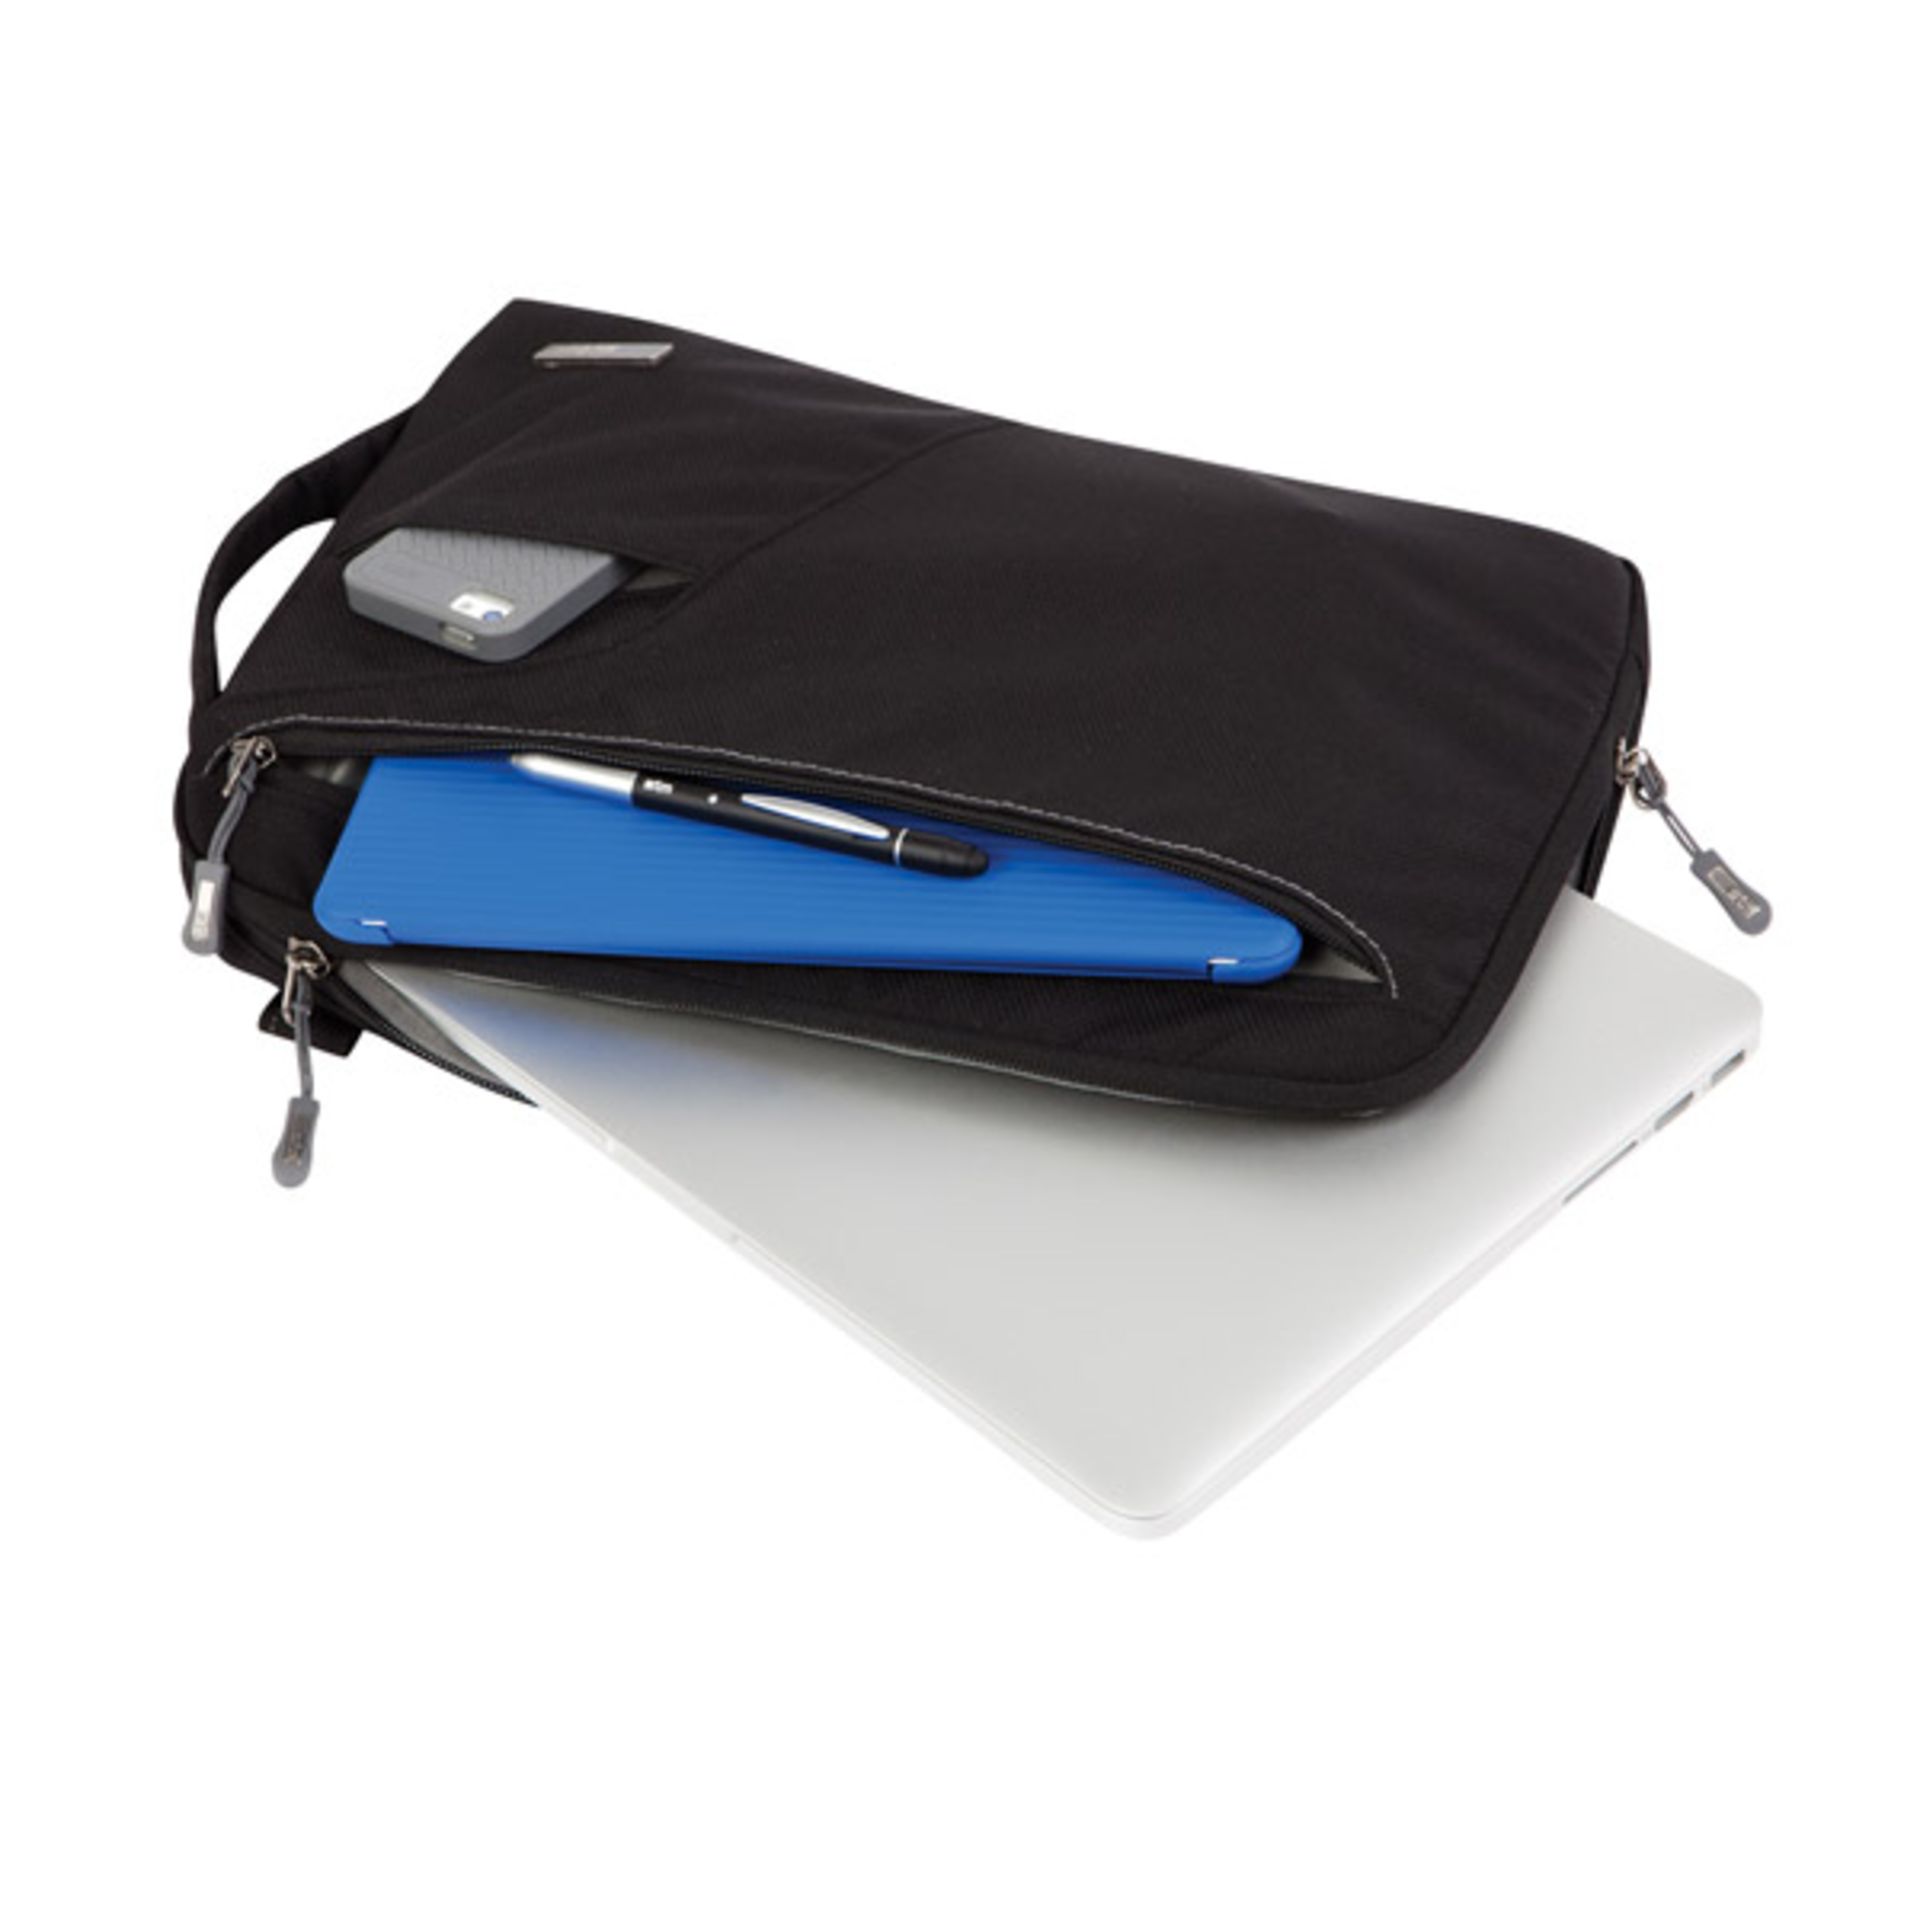 V Brand New STM Blazer Padded Sleeve - Bag For Laptops And Tablets 11" Black With Removable Shoulder - Image 2 of 2